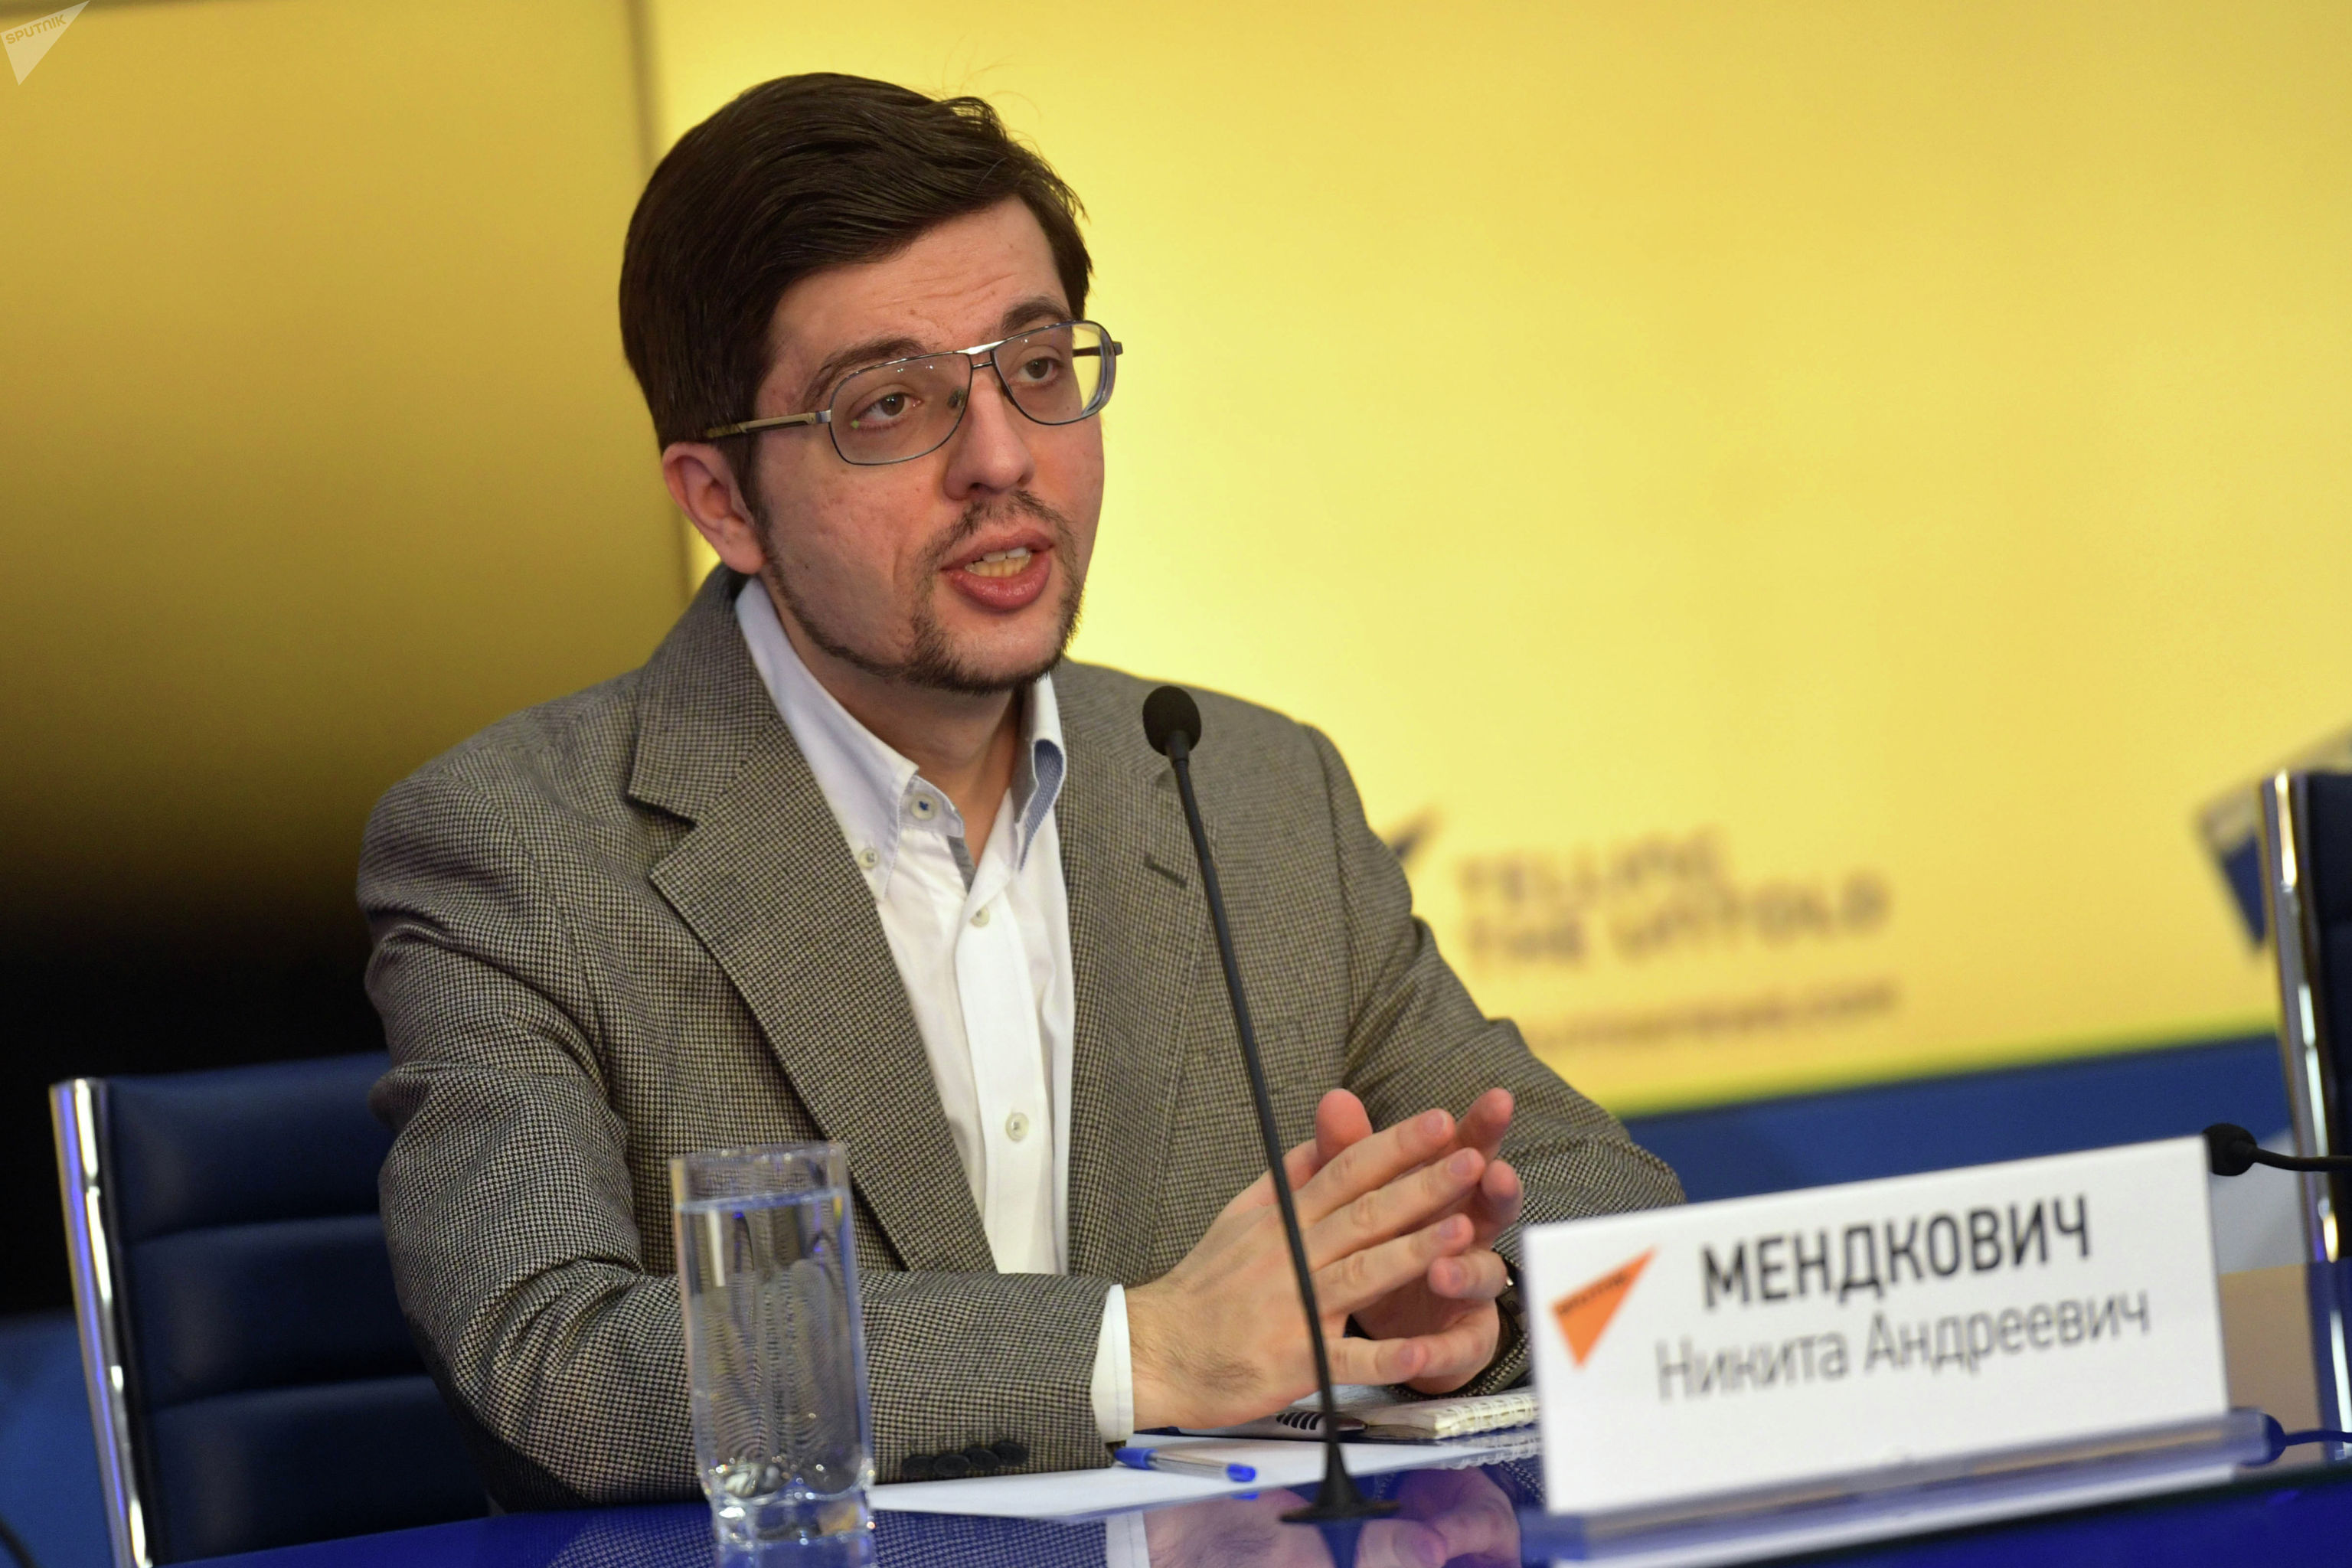 Политолог, председатель Евразийского аналитического клуба Никита Мендкович на пресс-конференции организованного МИА Россия сегодня.